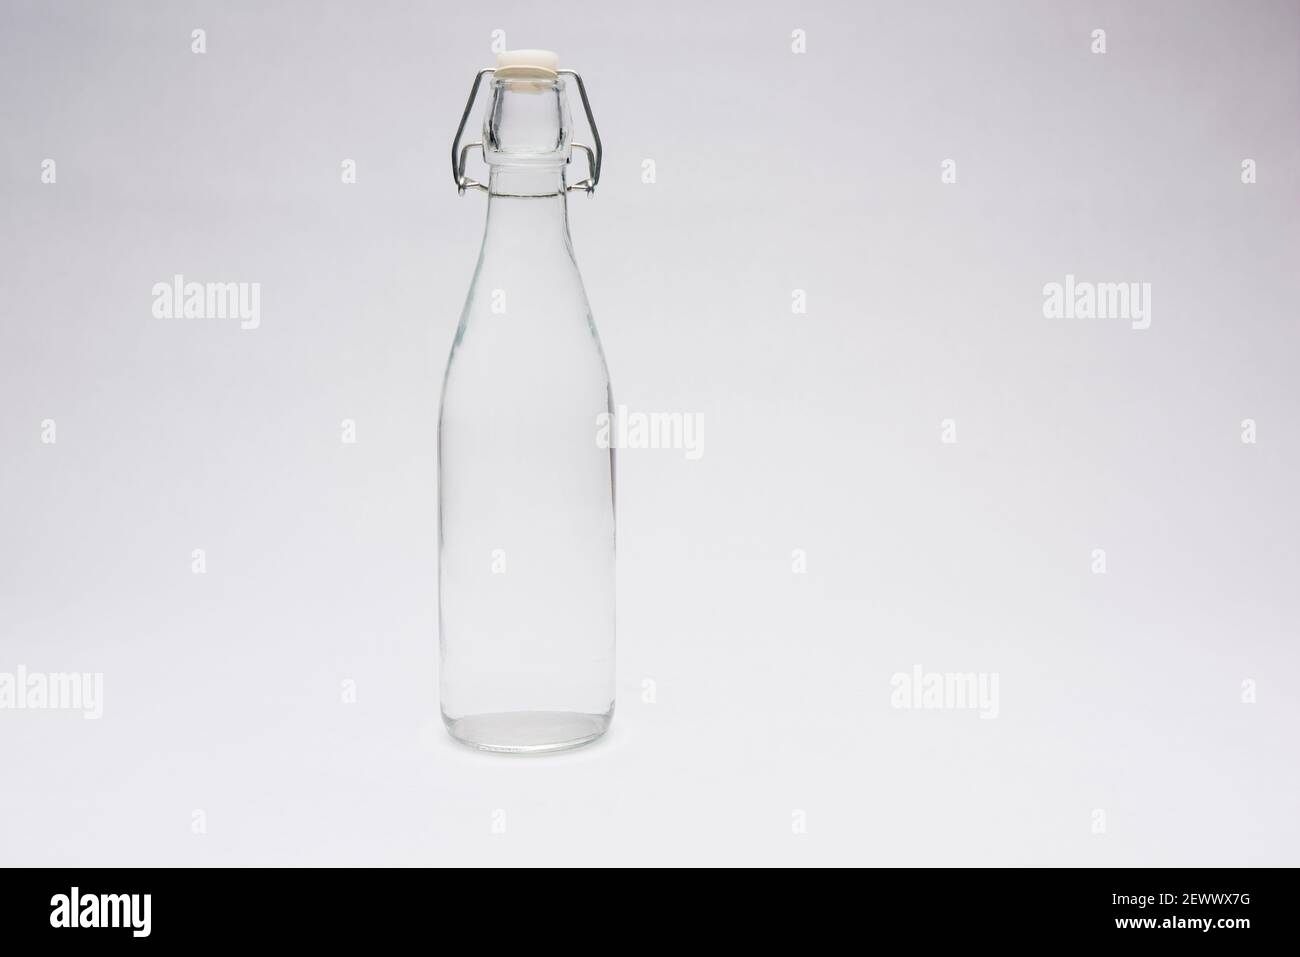 Durchsichtige Flasche Wasser auf weißem Hintergrund Stockfotografie - Alamy